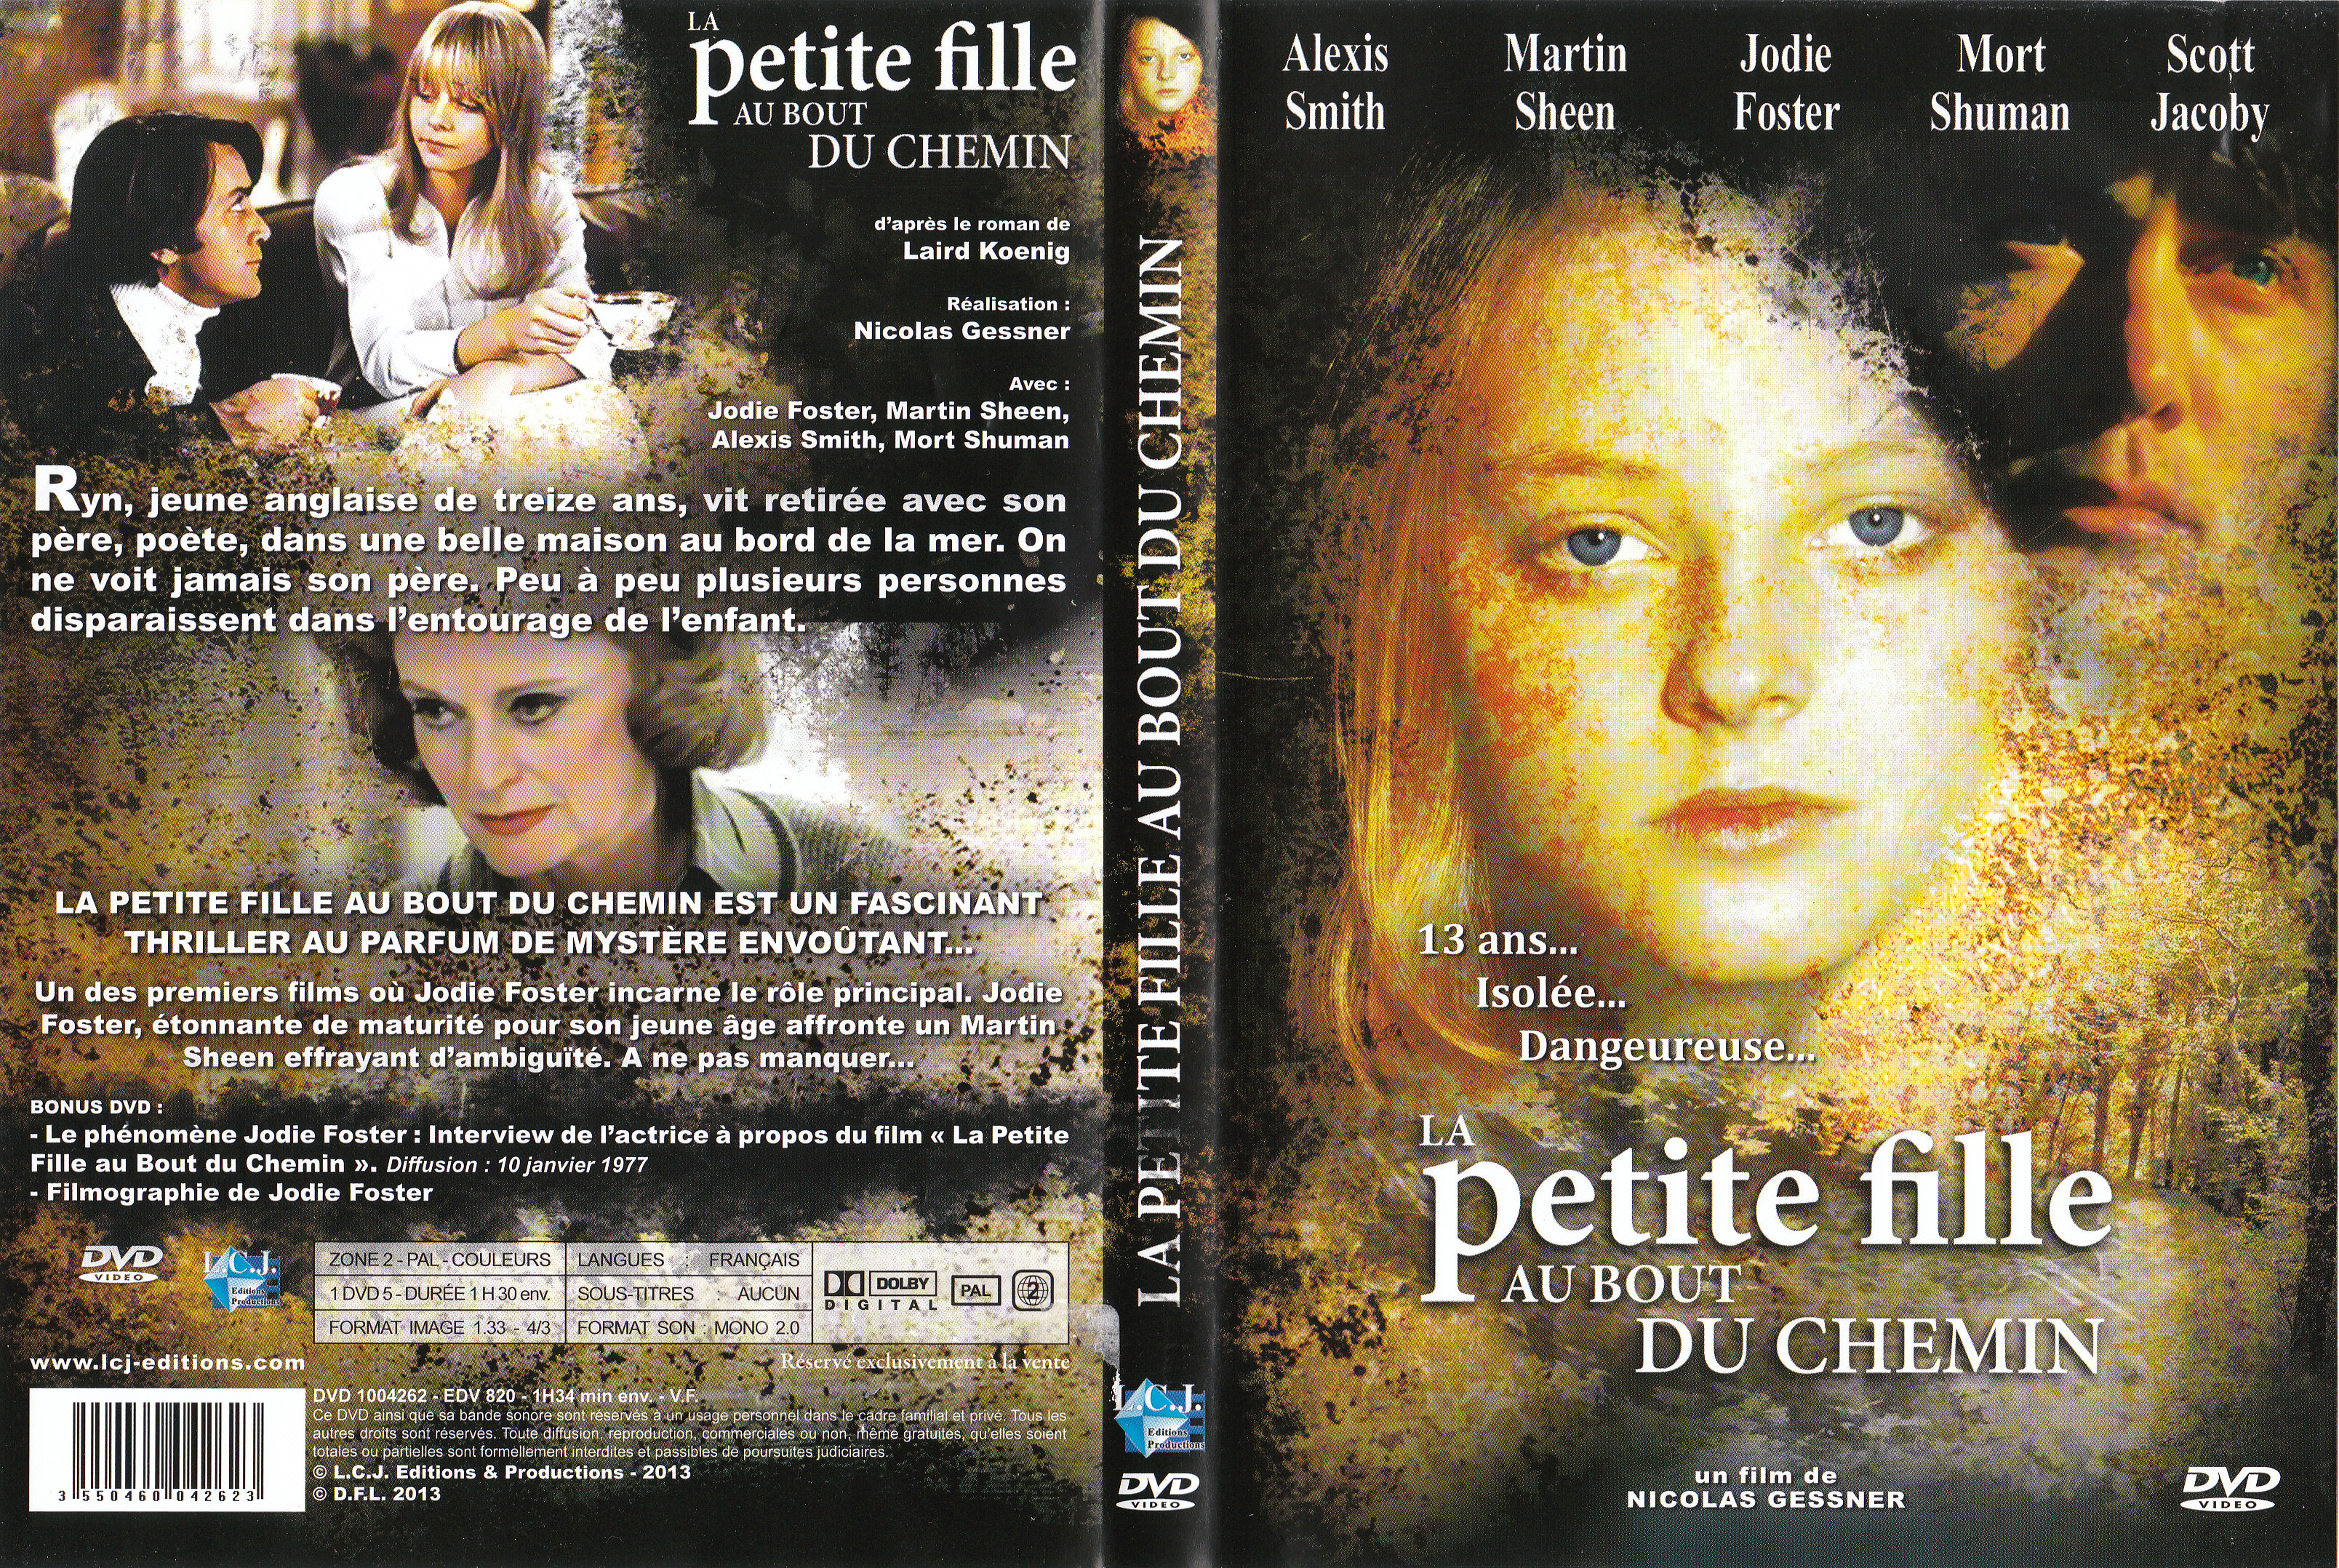 Jaquette DVD La Petite Fille au bout du chemin